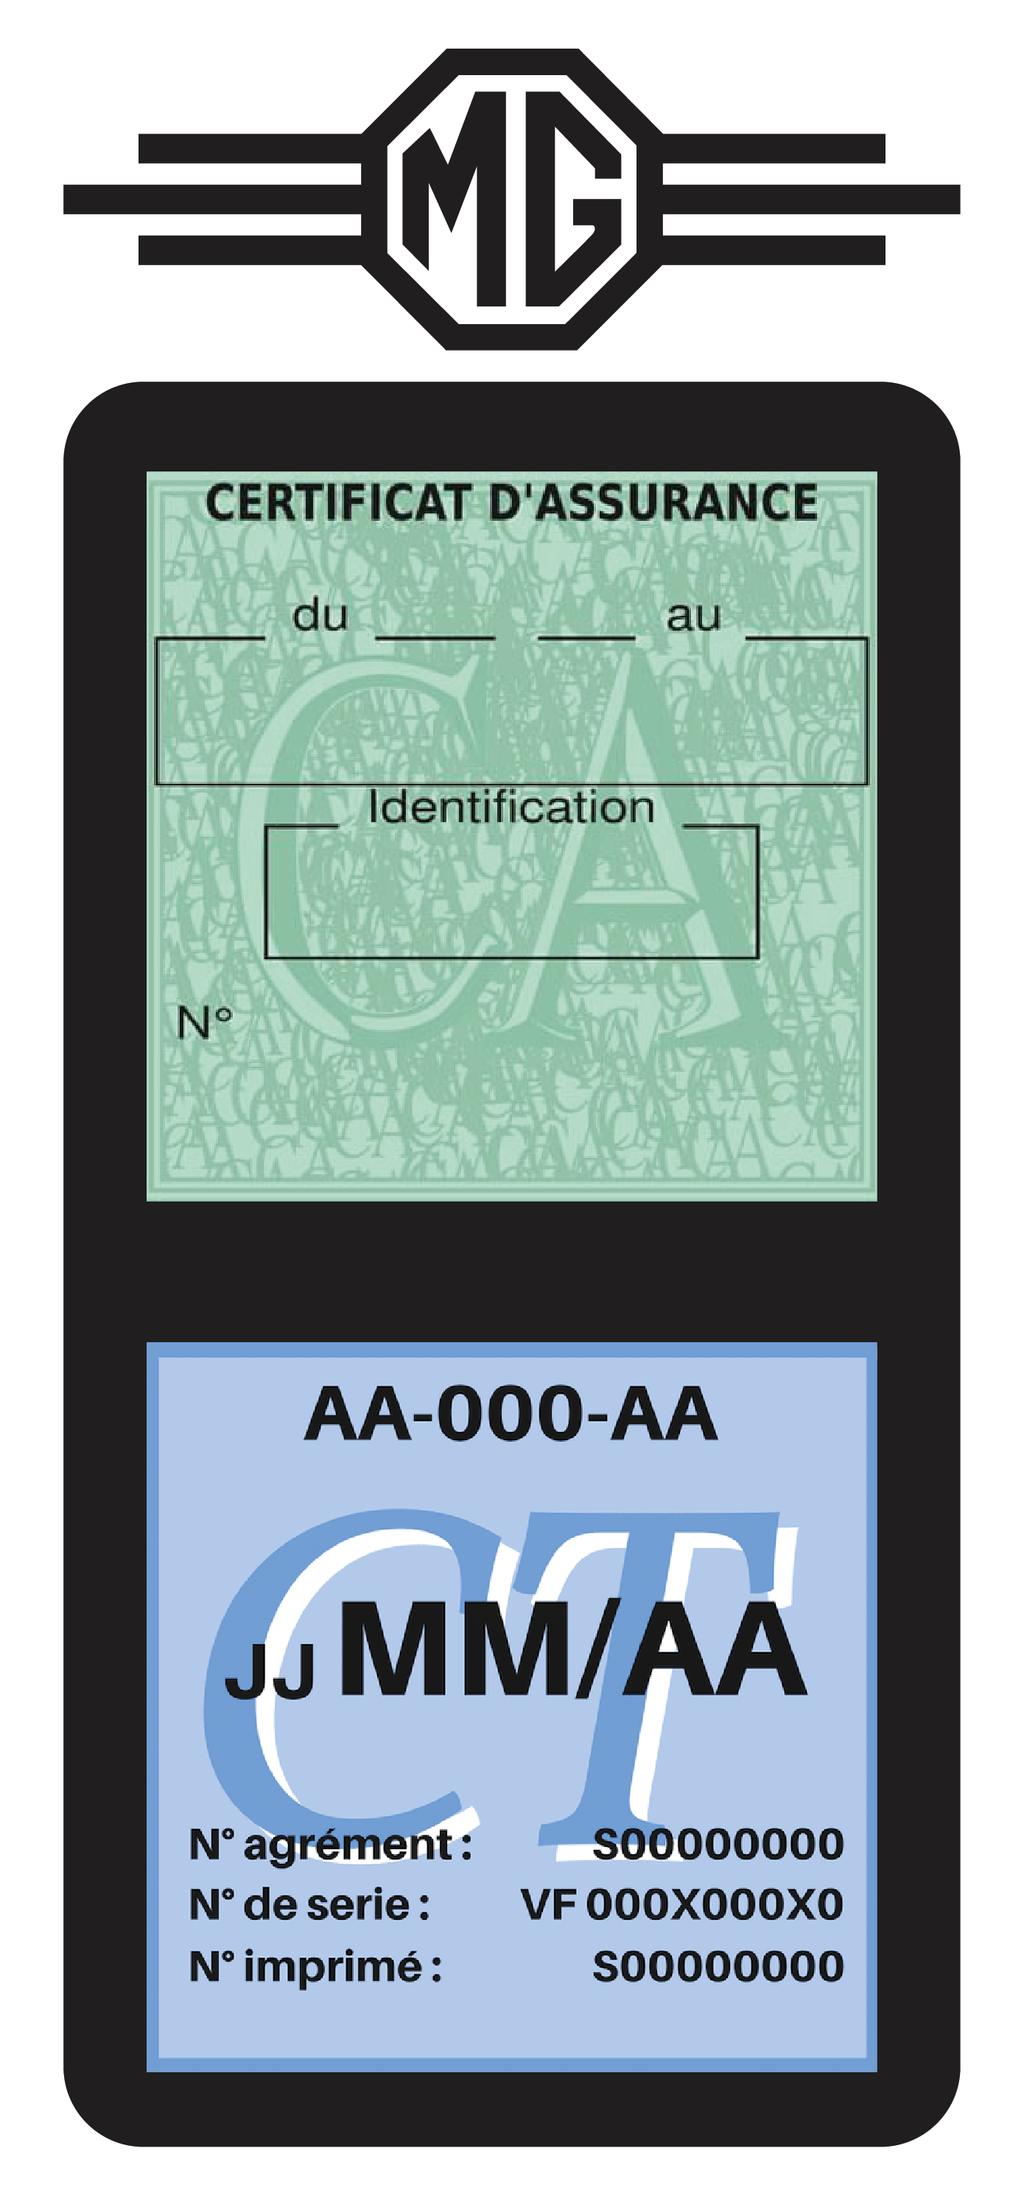 BYD VS115 Porte vignette assurance pare-brise Electrique Stickers